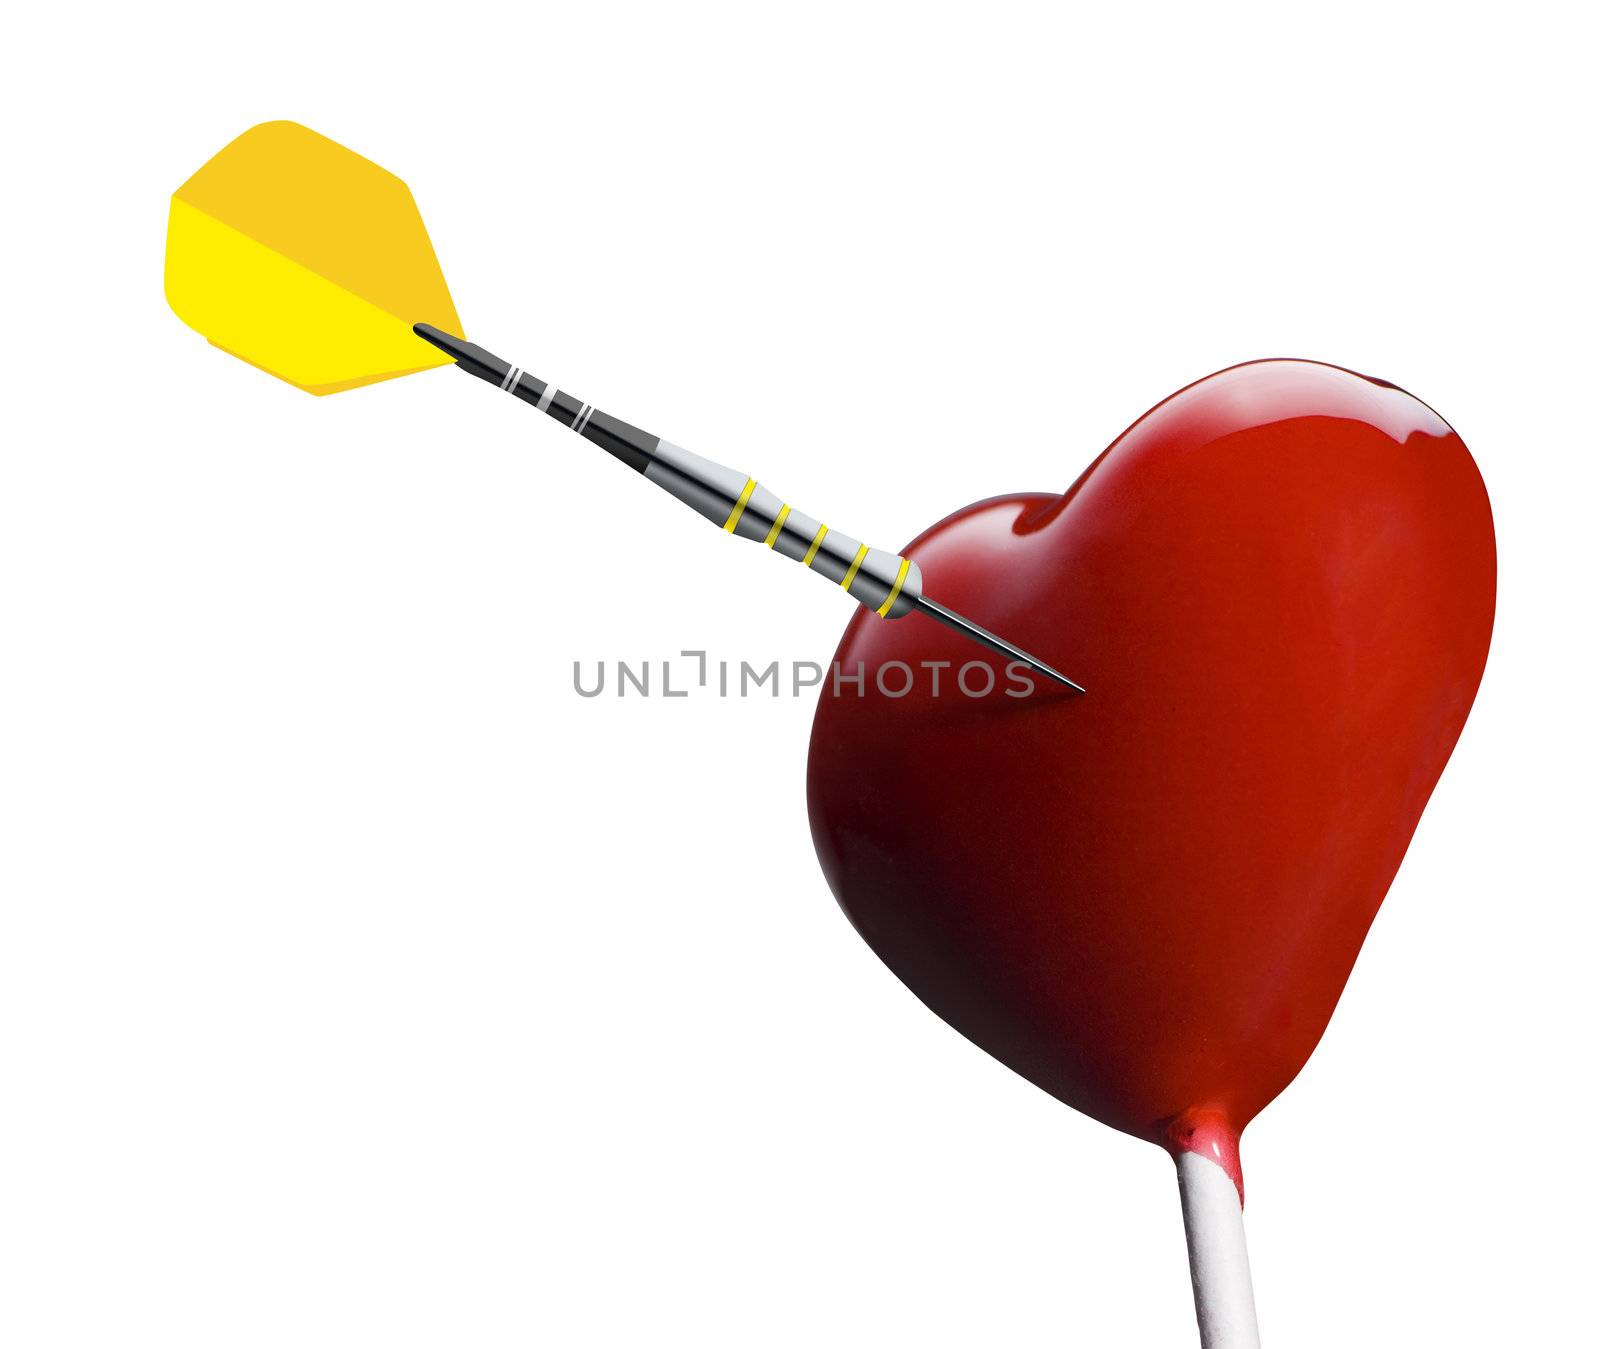 Heart-shaped lollipop hit by an arrow by pbombaert